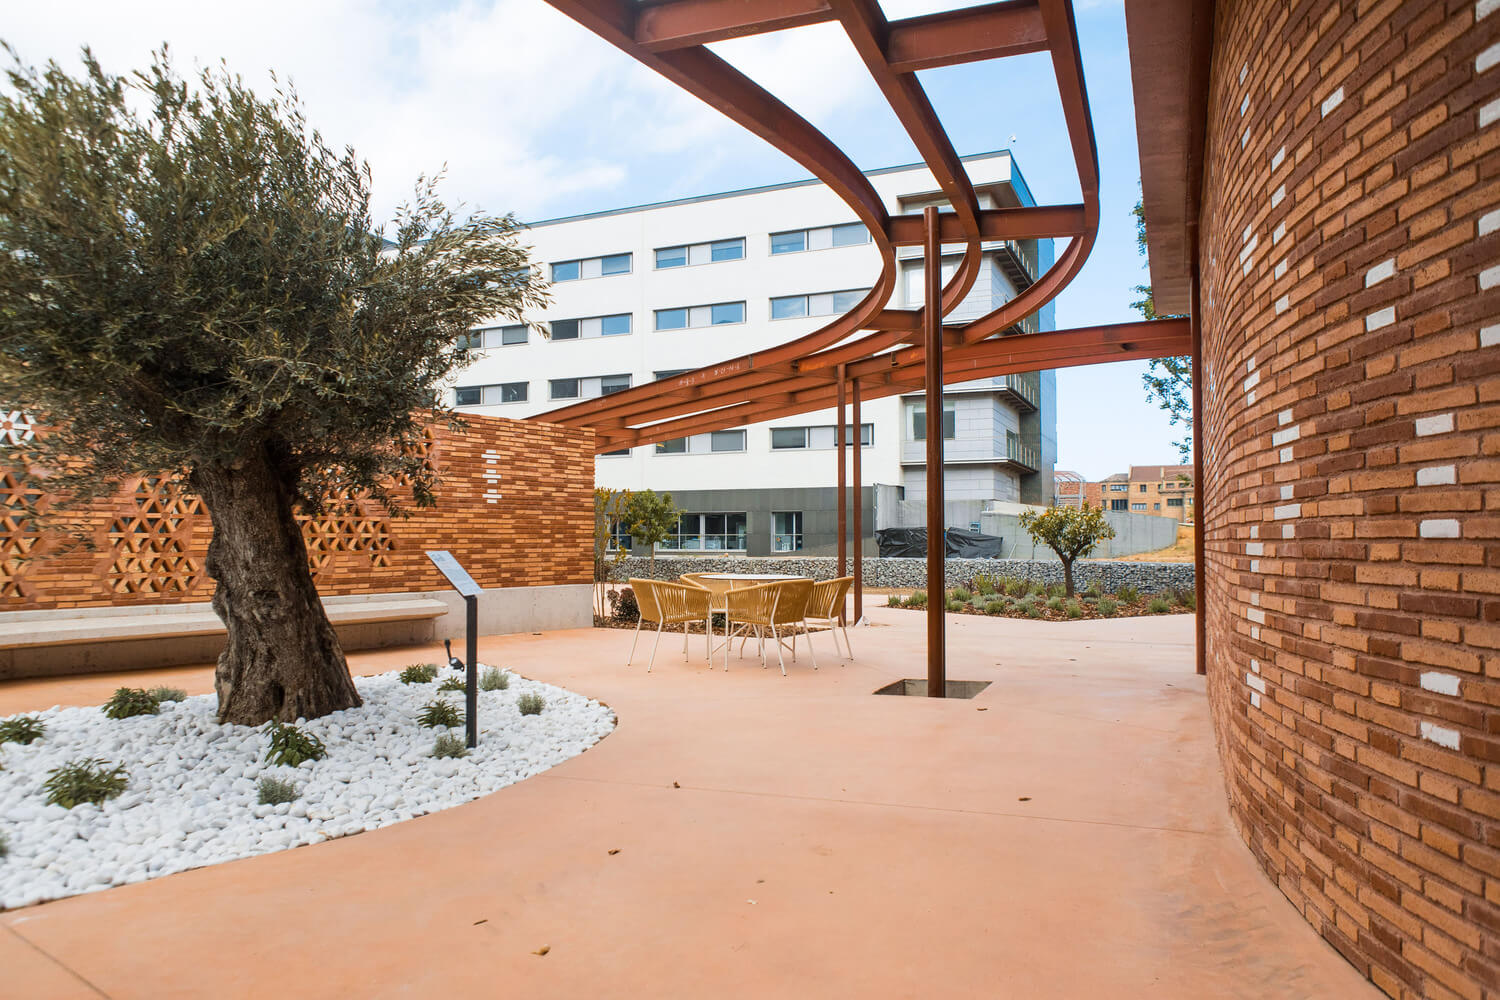 公共空間，醫療建築，醫療設施，Miralles Tagliabue EMBT，巴塞羅那，癌症治療中心